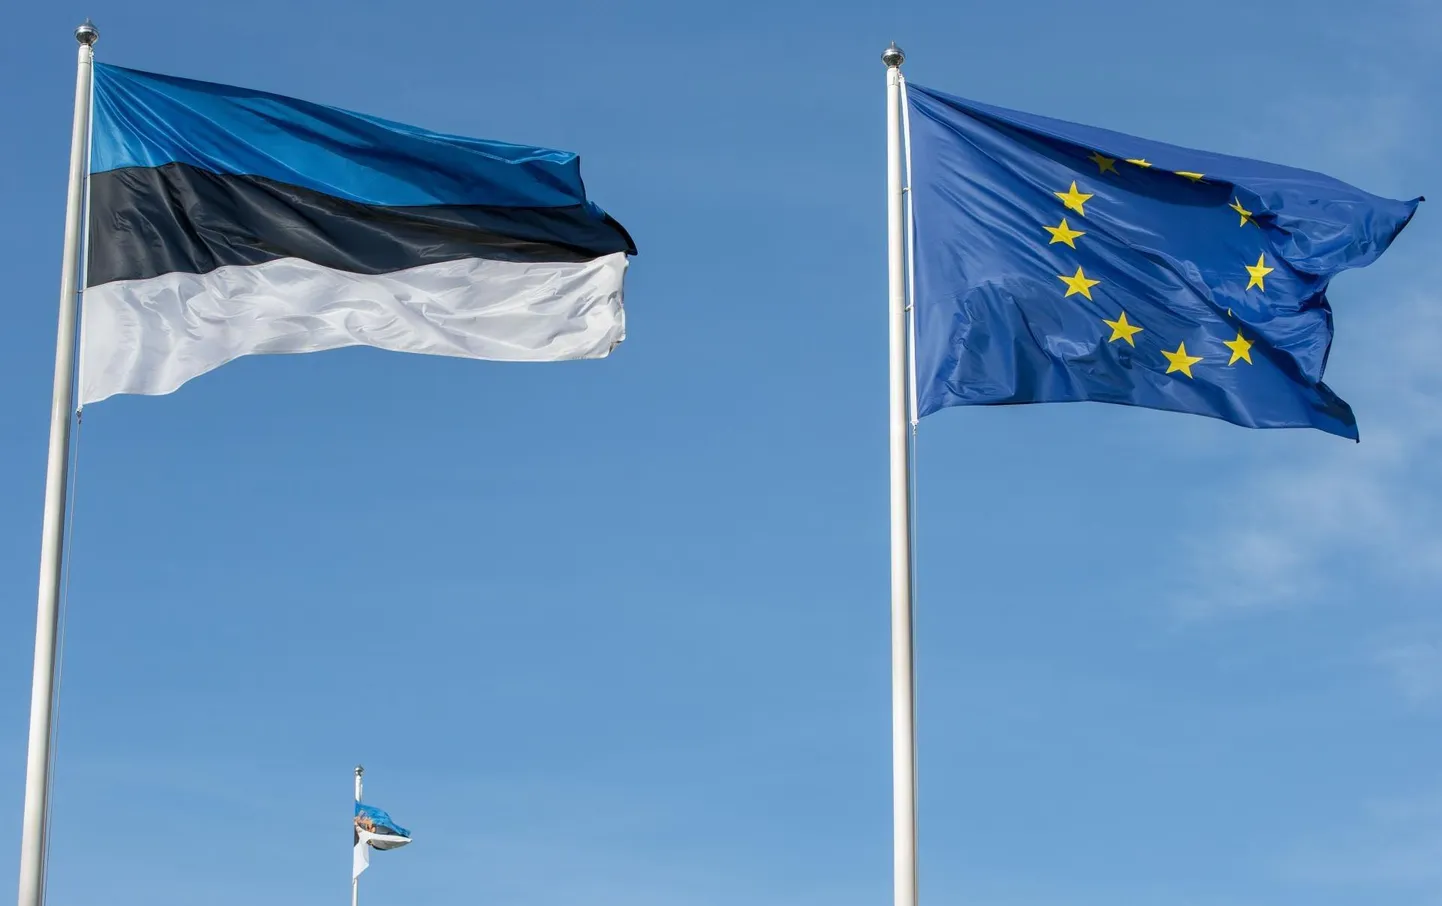 Eesti esitas Euroopa Liidule ametliku liitumistaotluse 1995. aastal ning võeti ühenduse liikmeks 2004. aastal.